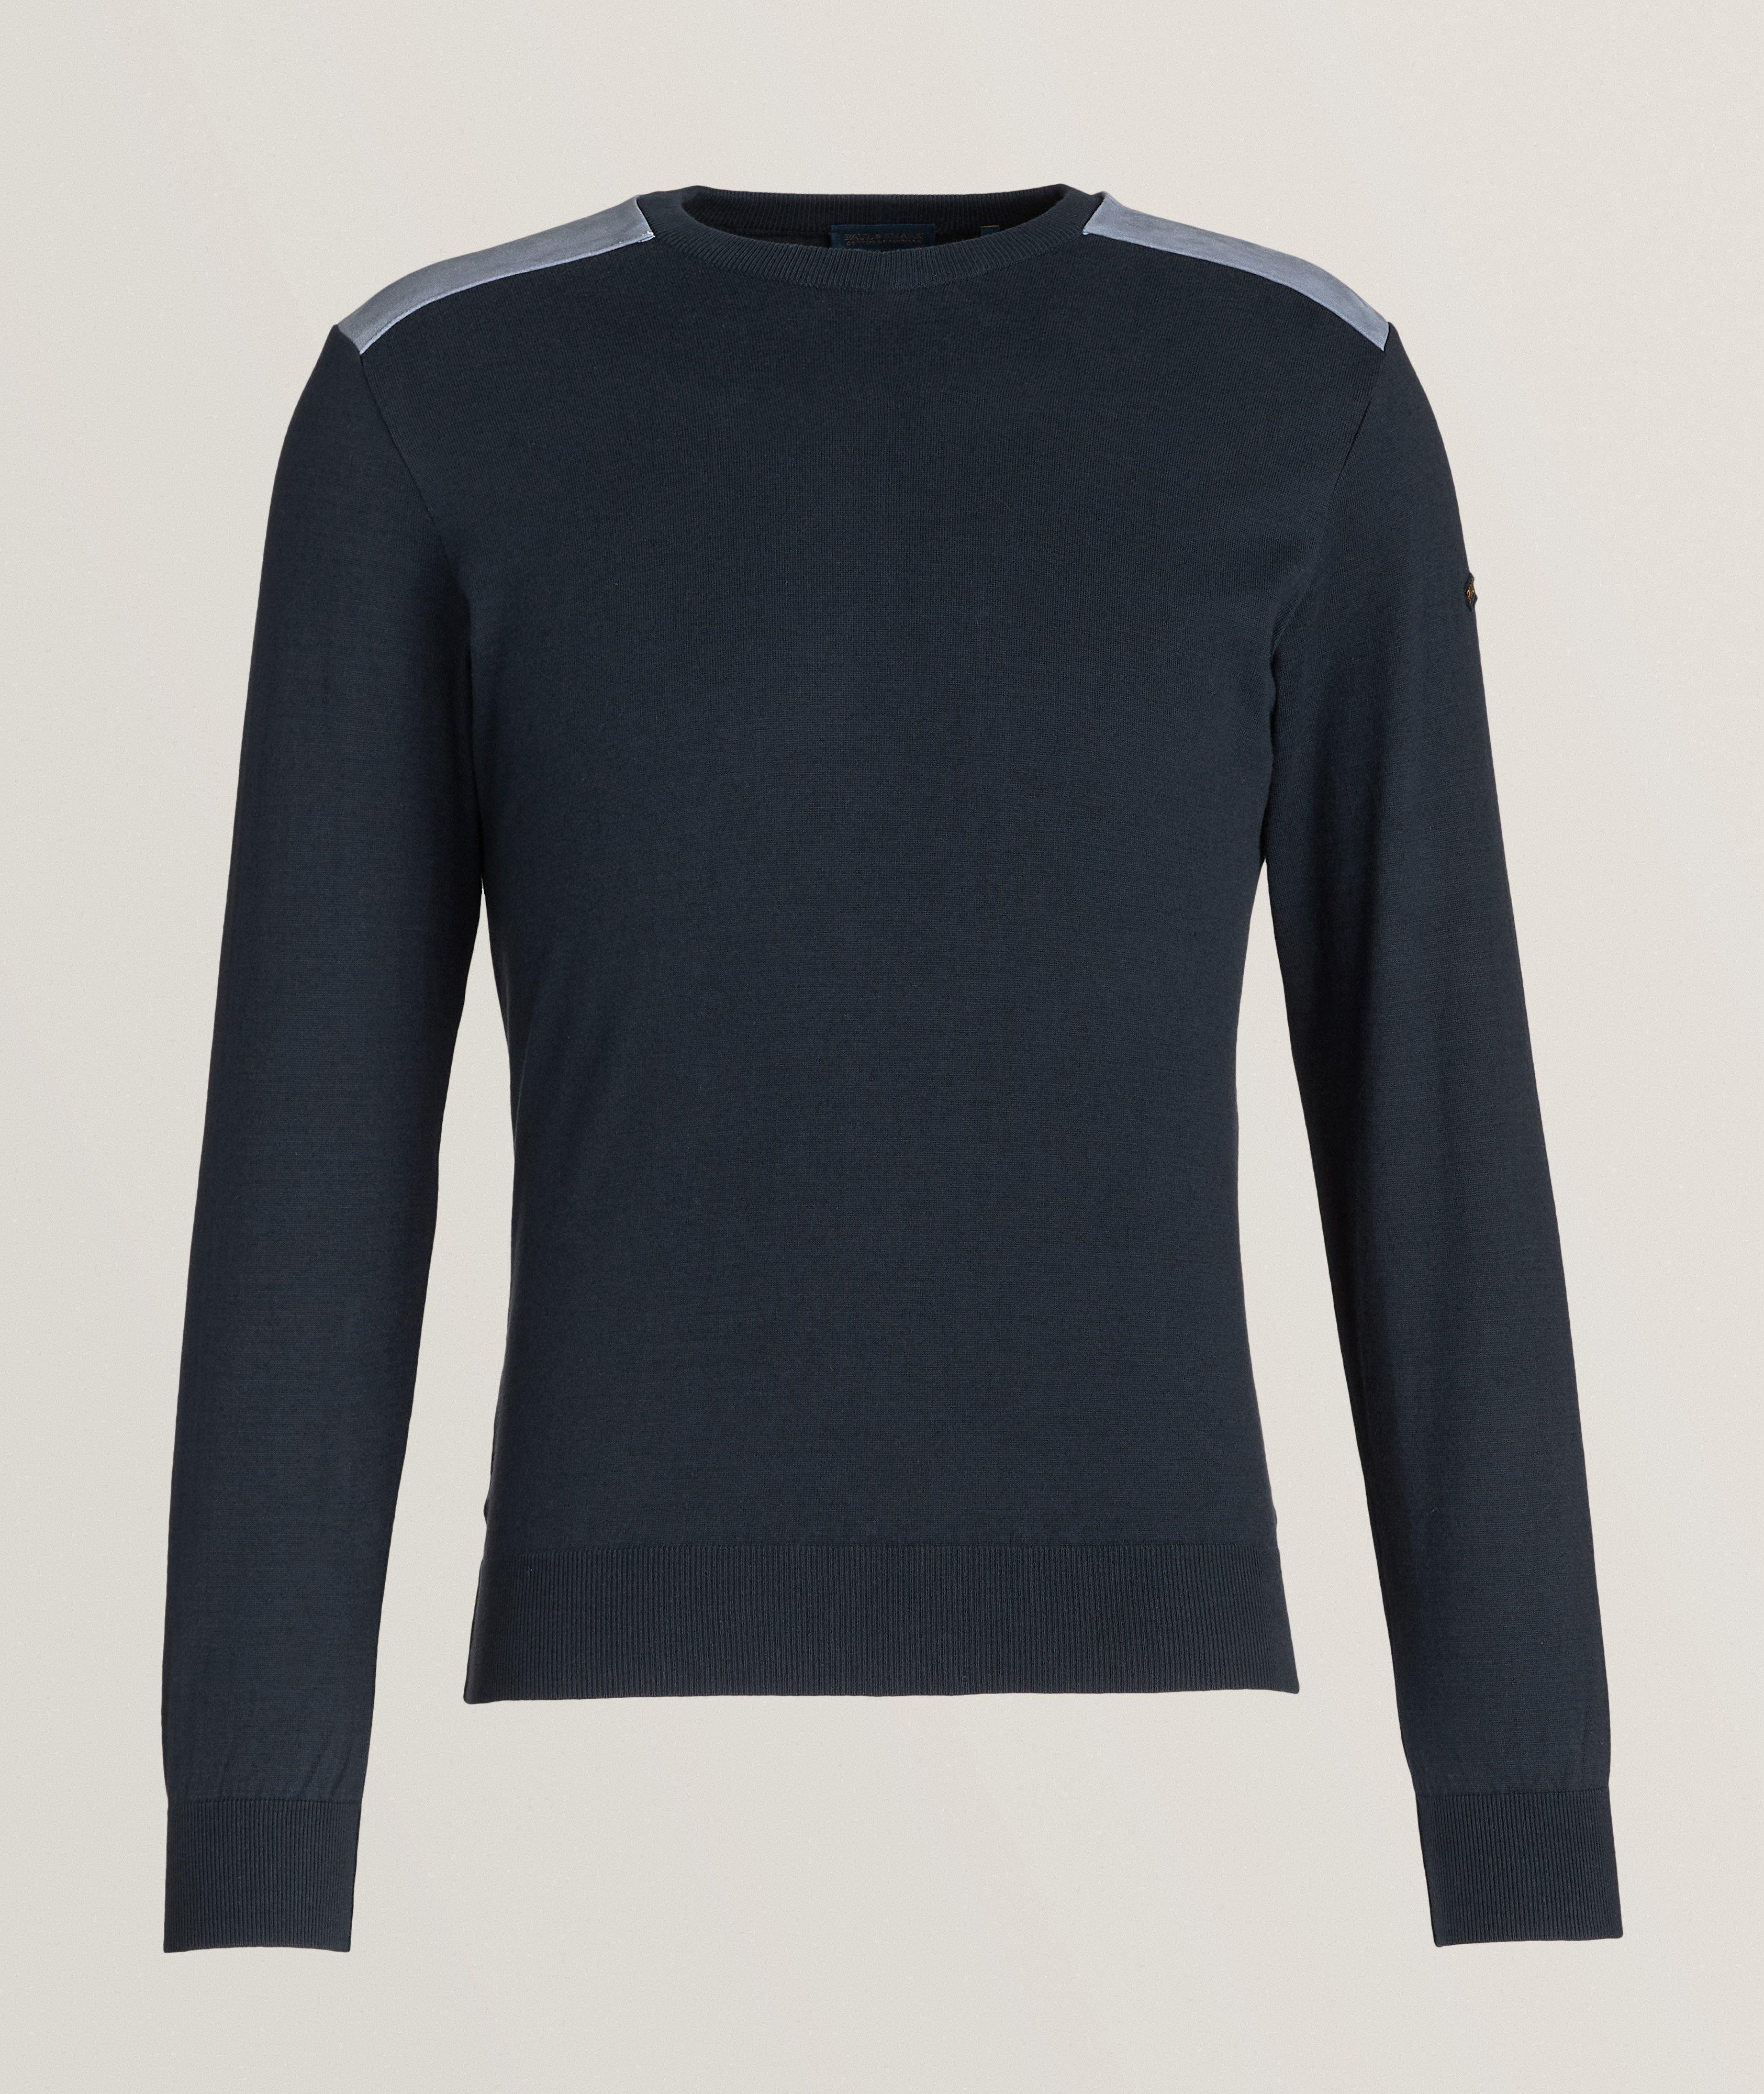 Aqua Leather Shoulder Patch Cotton-Cashmere T-Shirt  image 0